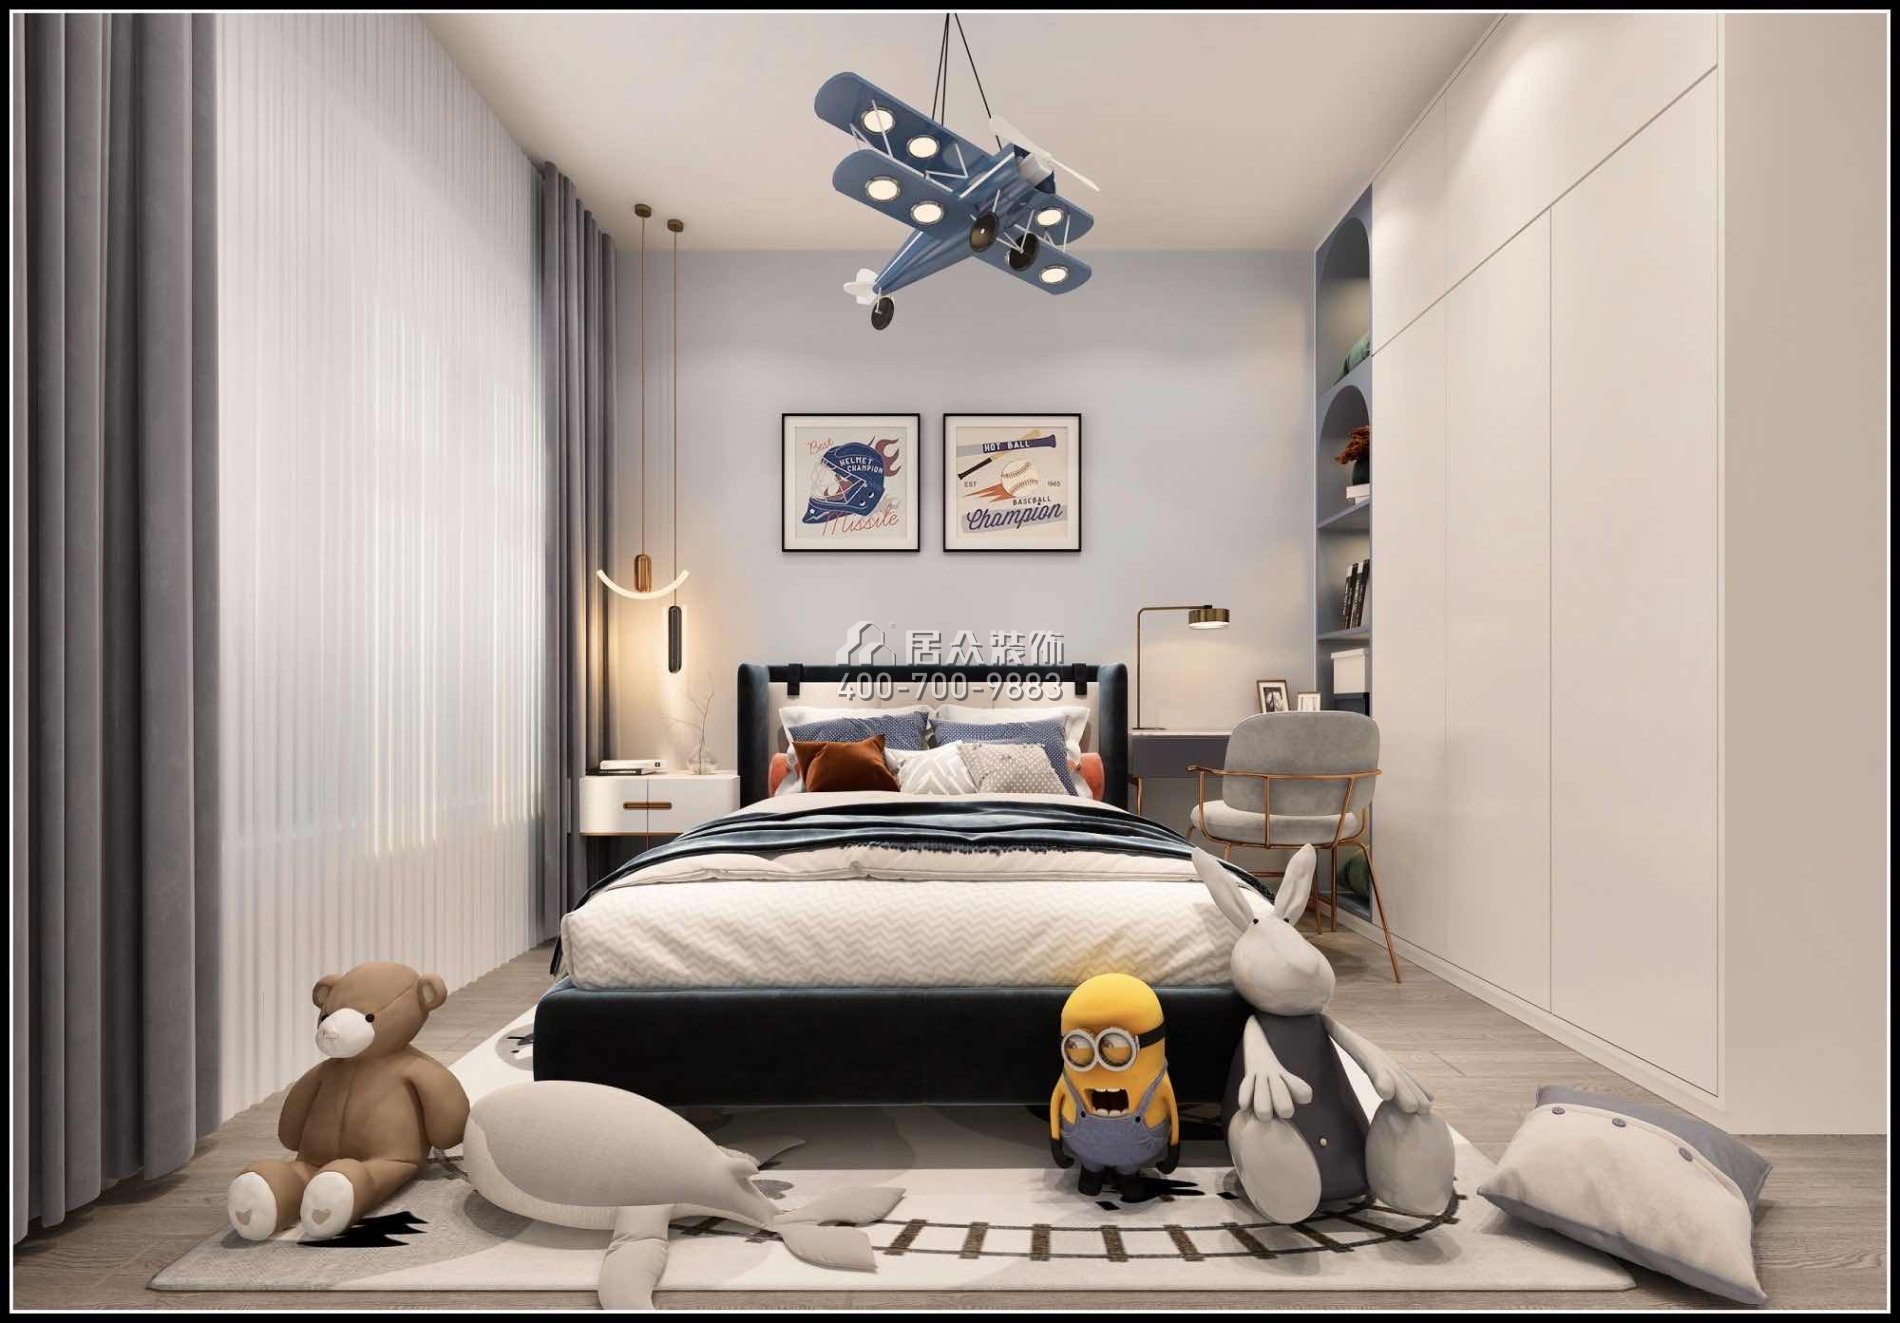 金鸿利嘉阁320平方米中式风格复式户型卧室装修效果图